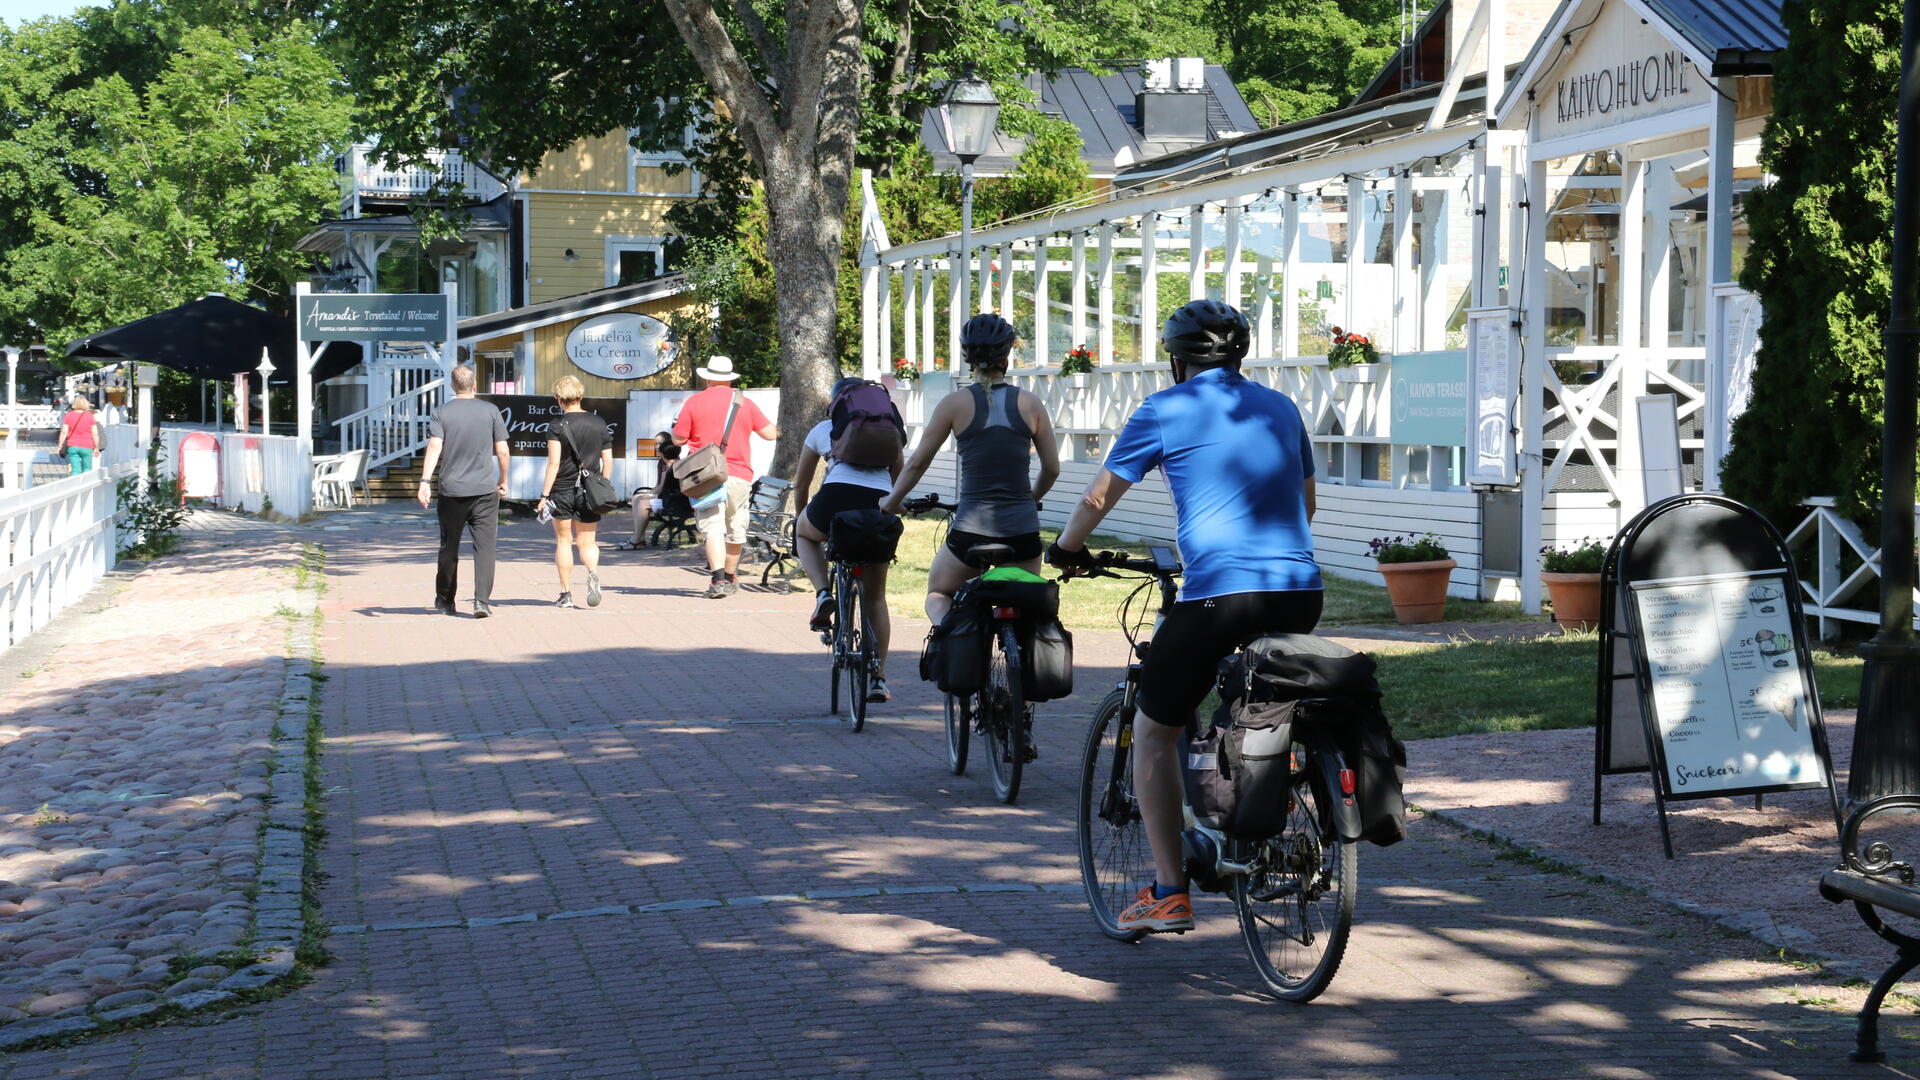 Kolme pyöräilijää ajaa Vanhassakaupungissa ravintola Kaivohuoneen edustalla, kesäisenä päivänä rannassa liikkuu ihmisiä.